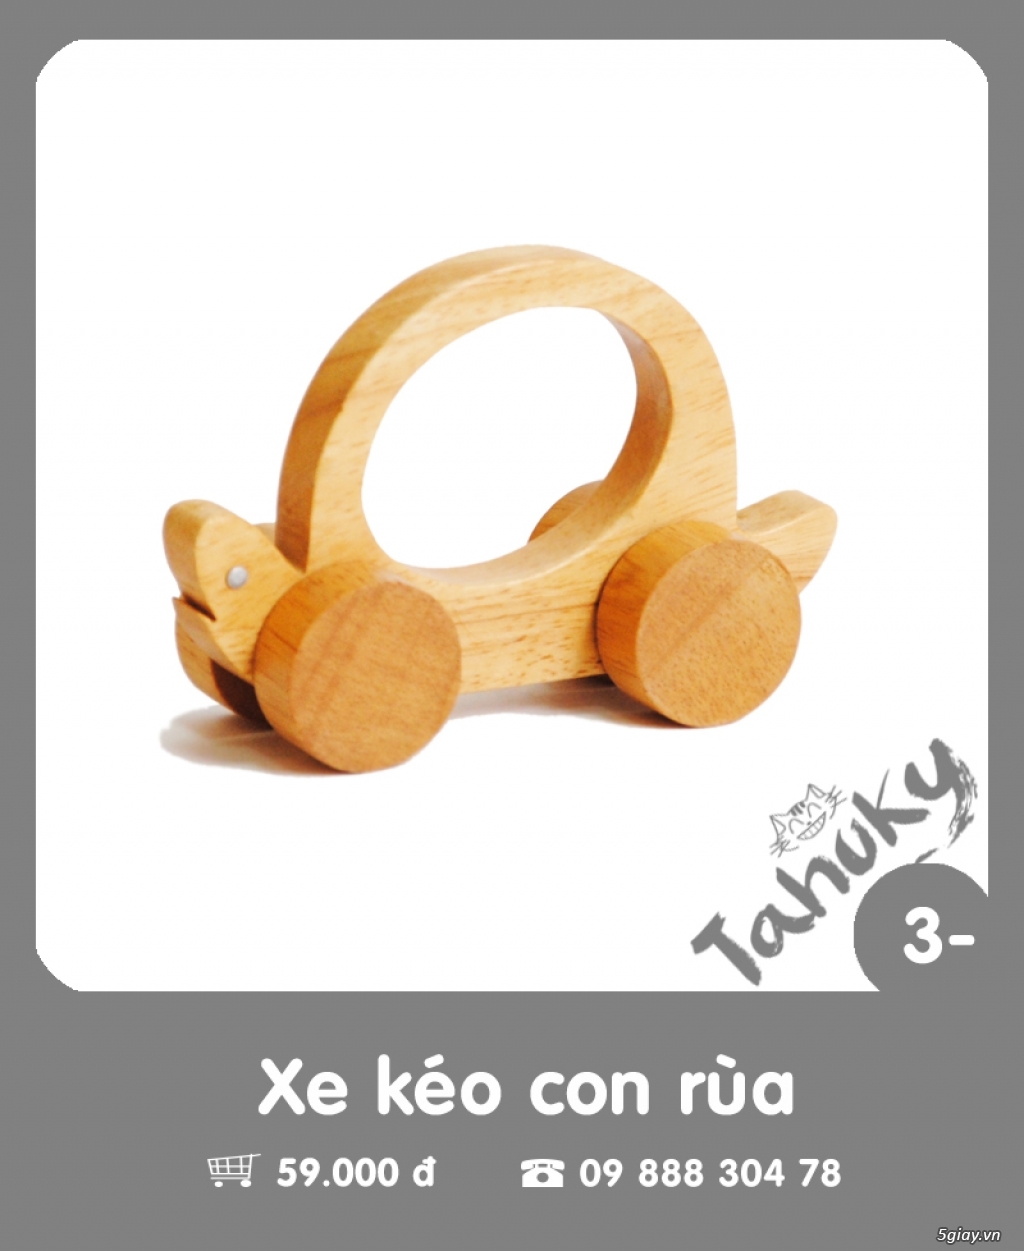 Đồ chơi gỗ an toàn Tahuky (dành cho bé dưới 3 tuổi) - 4